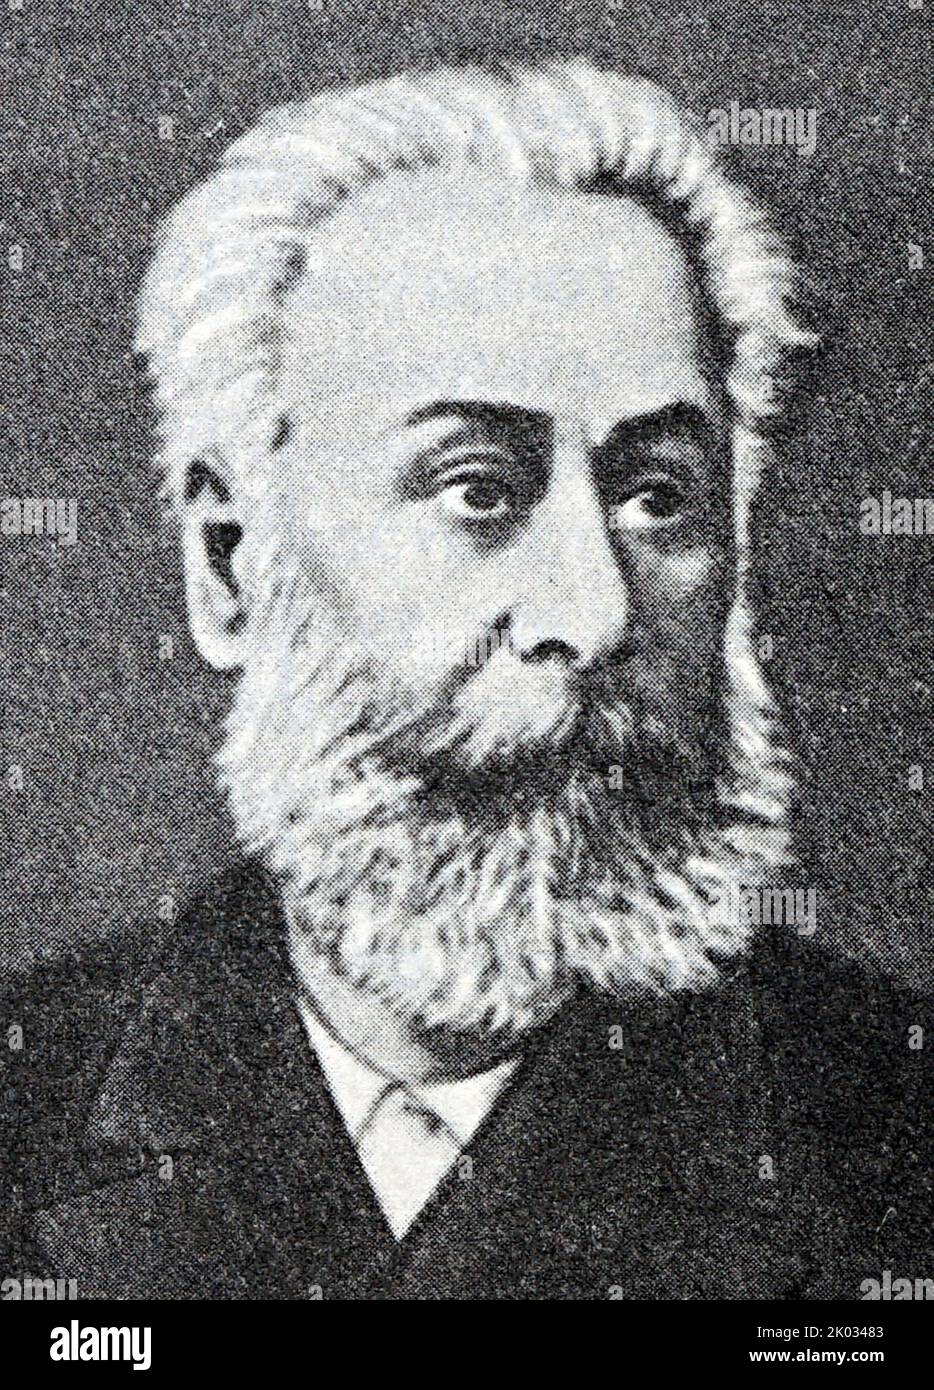 Prinz Akaki Zereteli (1840-1915), oft mononym als Akaki bekannt, war ein prominenter georgischer Dichter und eine Figur der nationalen Befreiungsbewegung. Stockfoto